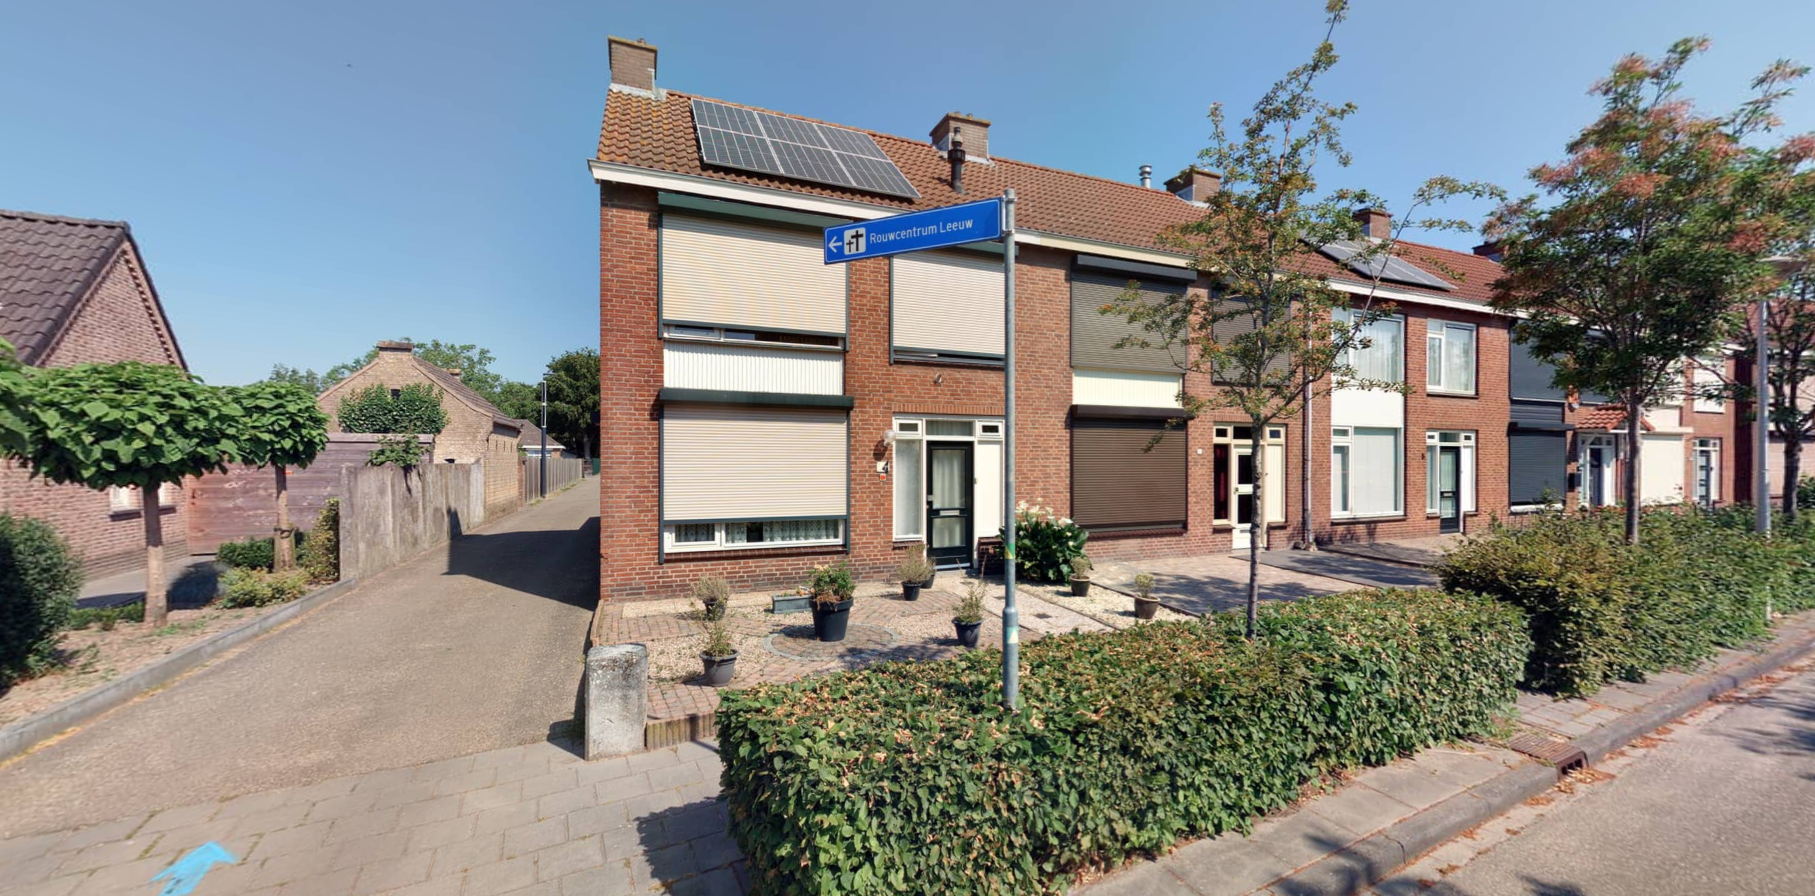 Corneliusstraat 1A, 4651 XN Steenbergen, Nederland